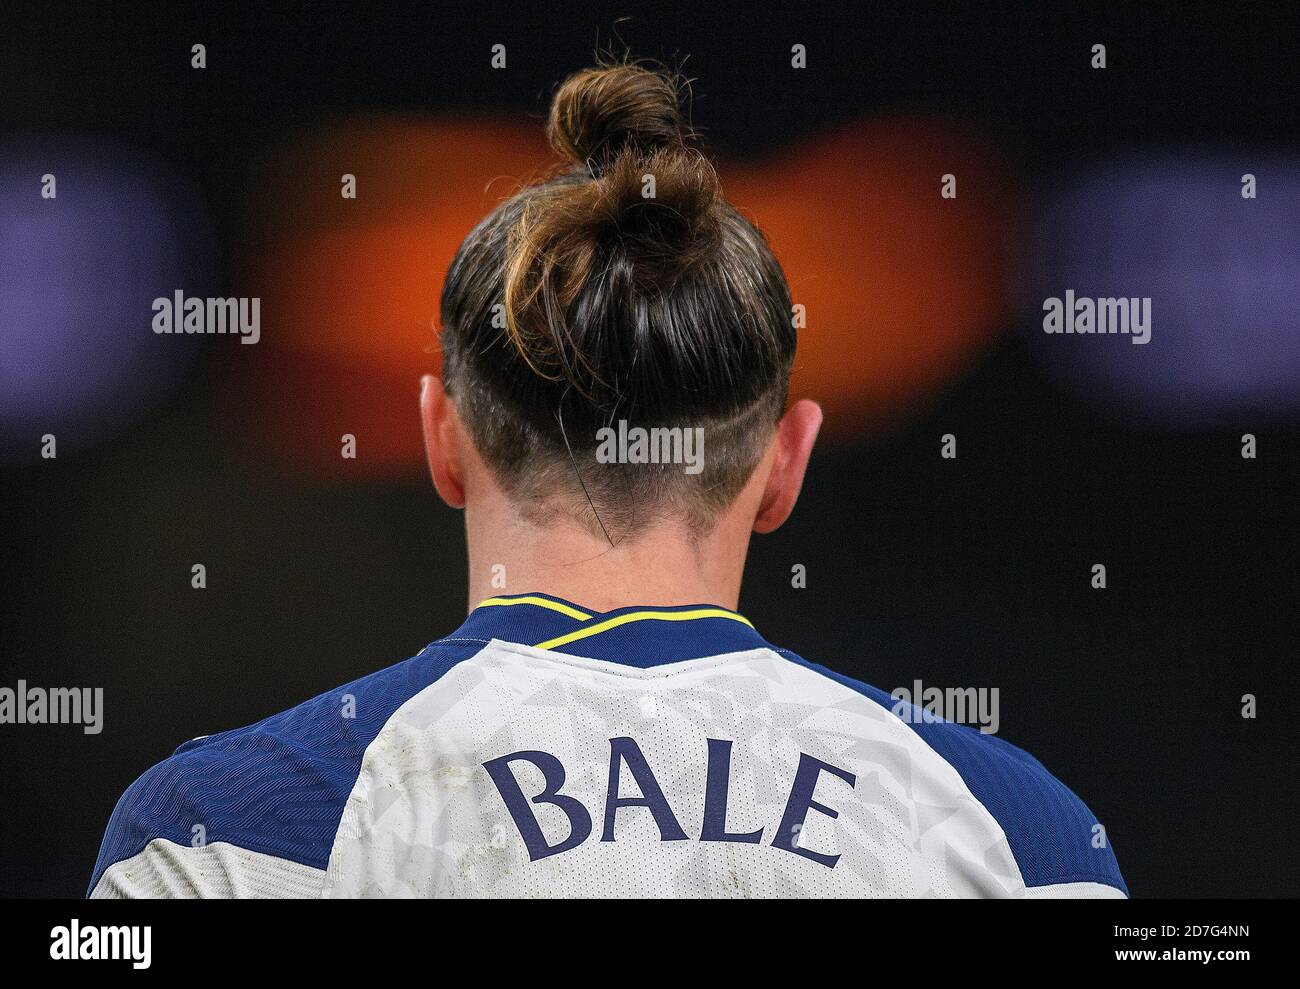 Londra, Regno Unito. 22 ottobre 2020. Gareth Bale durante la partita Europa League al New Tottenham Stadium di Londra. Londra, Inghilterra, 22 ottobre 2020. Tottenham Hotspur / LEK. Europa League. Credito : Mark Pain / Alamy Foto Stock